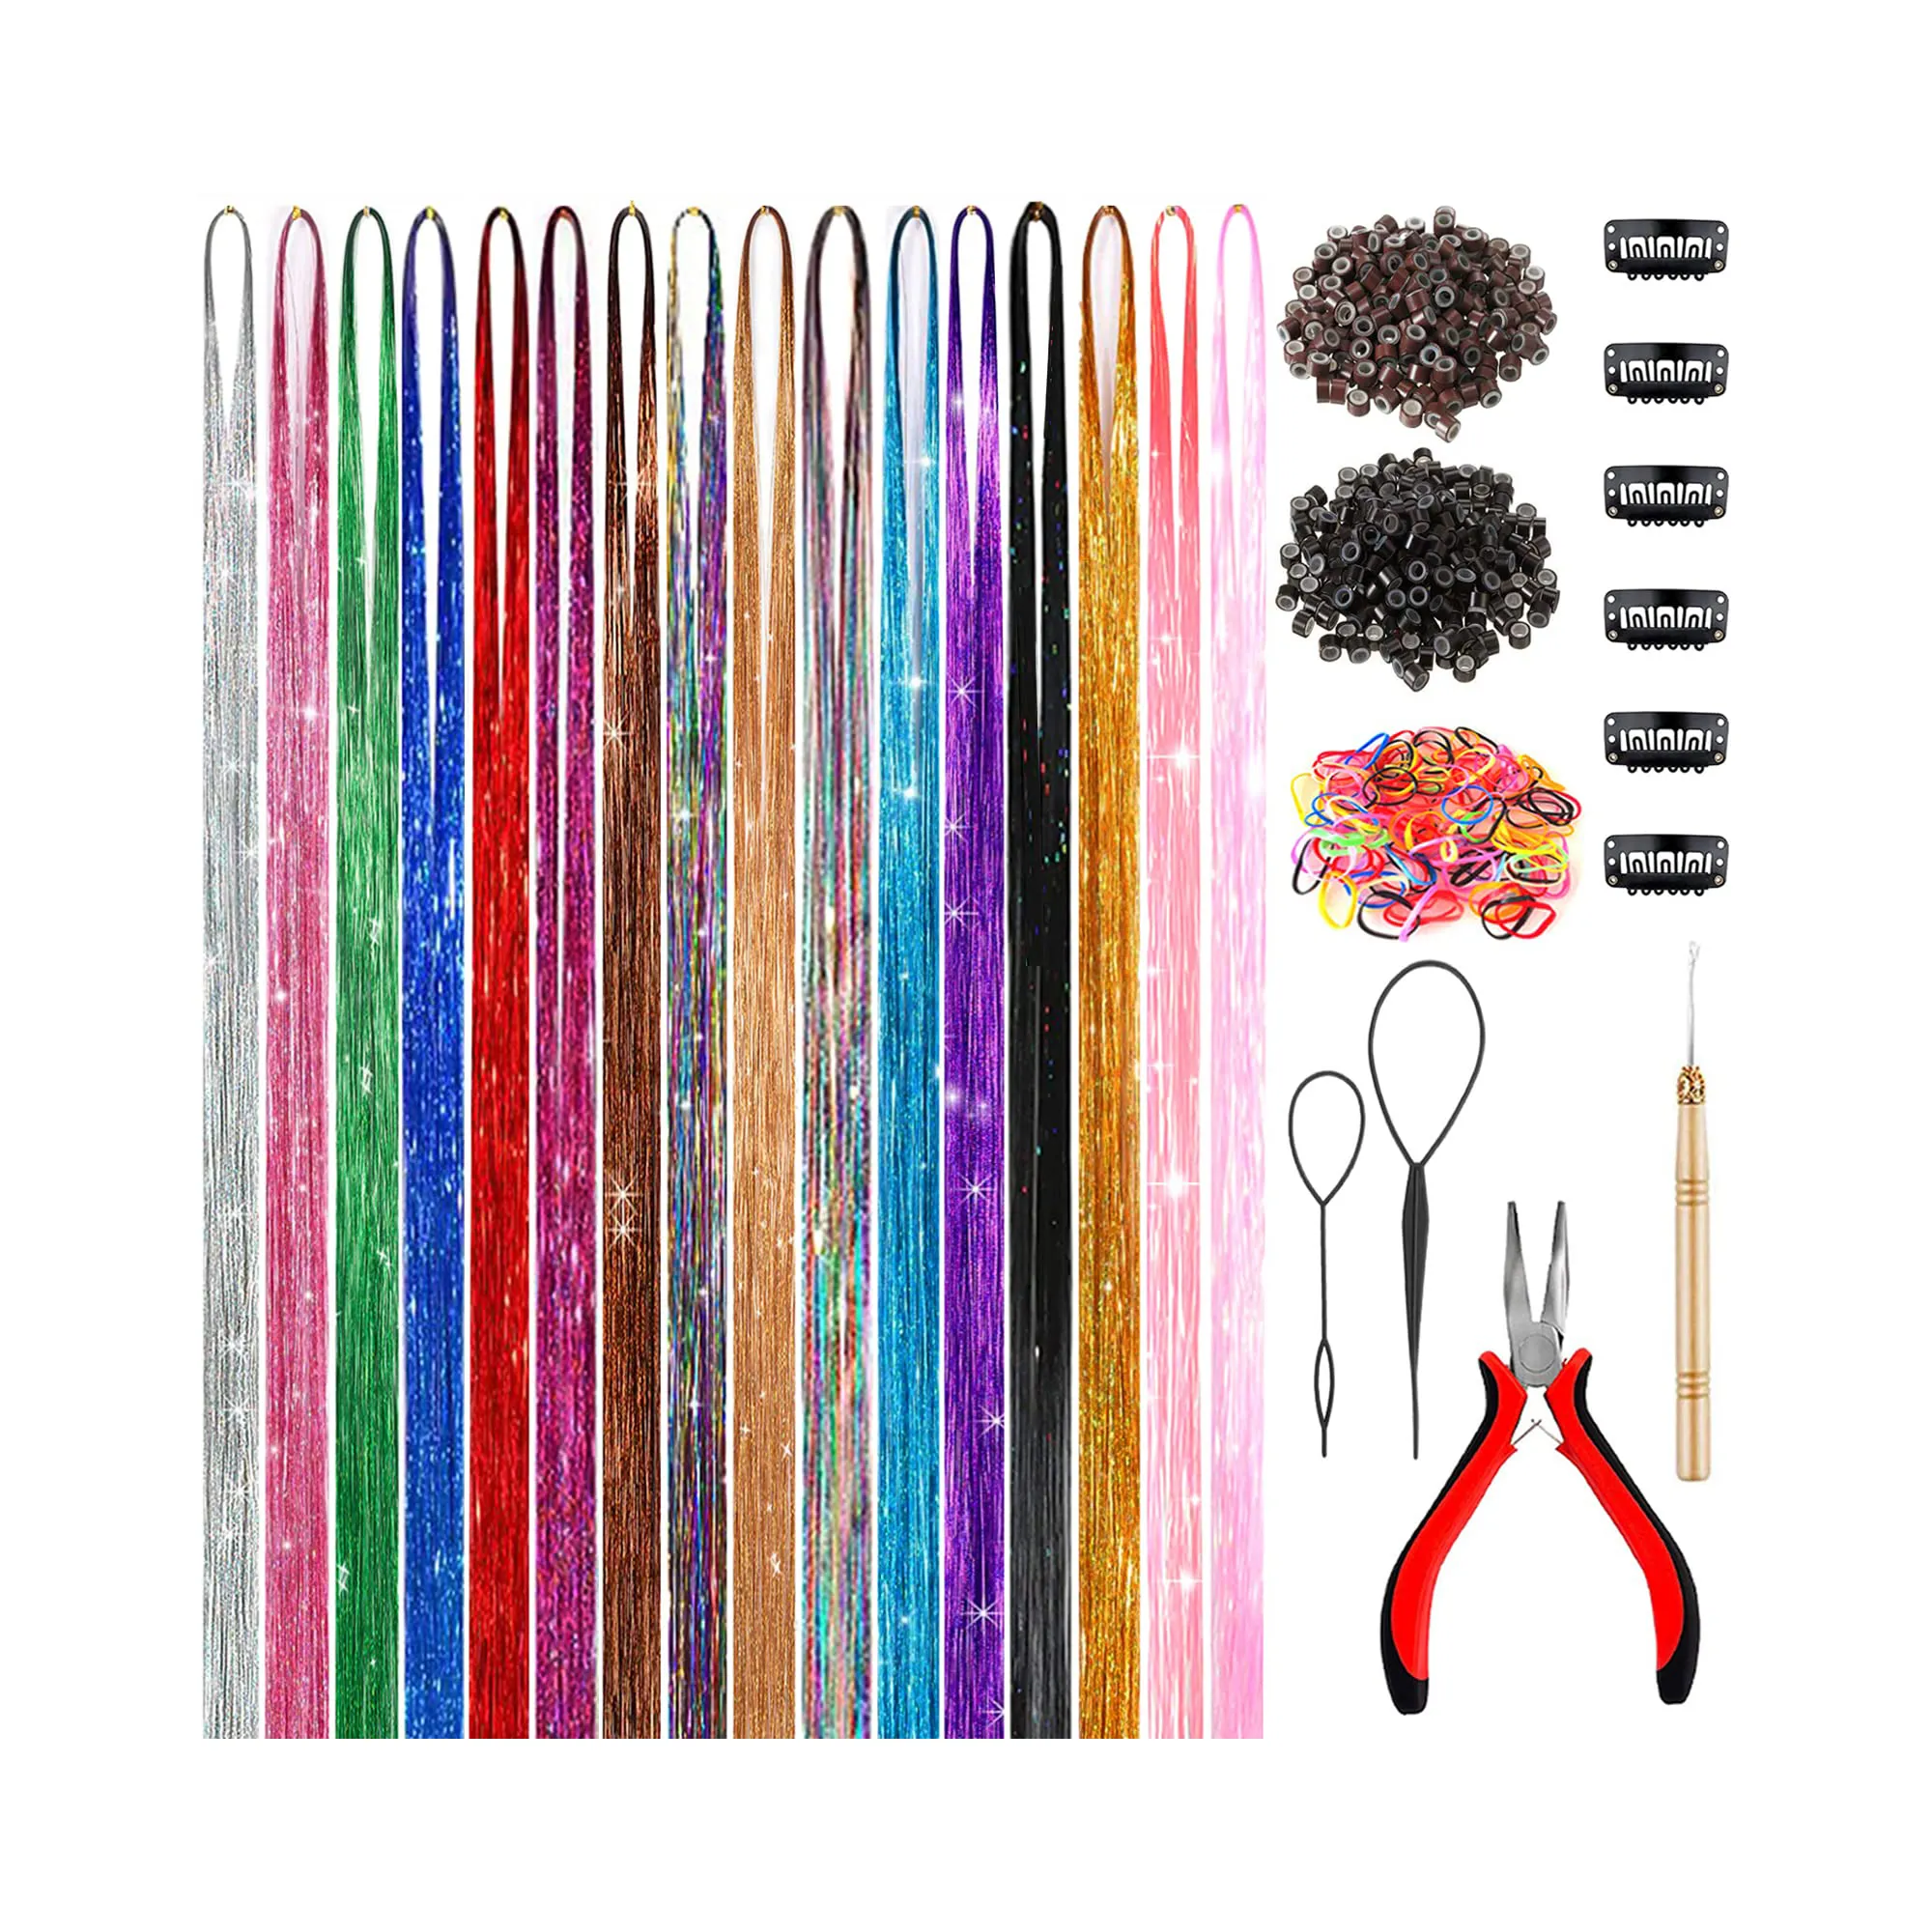 48 pollici Glitter Hair Tinsel extension Kit 16 colori 4800 ciocche con strumenti resistente al calore parrucchino per donna ragazze bambini